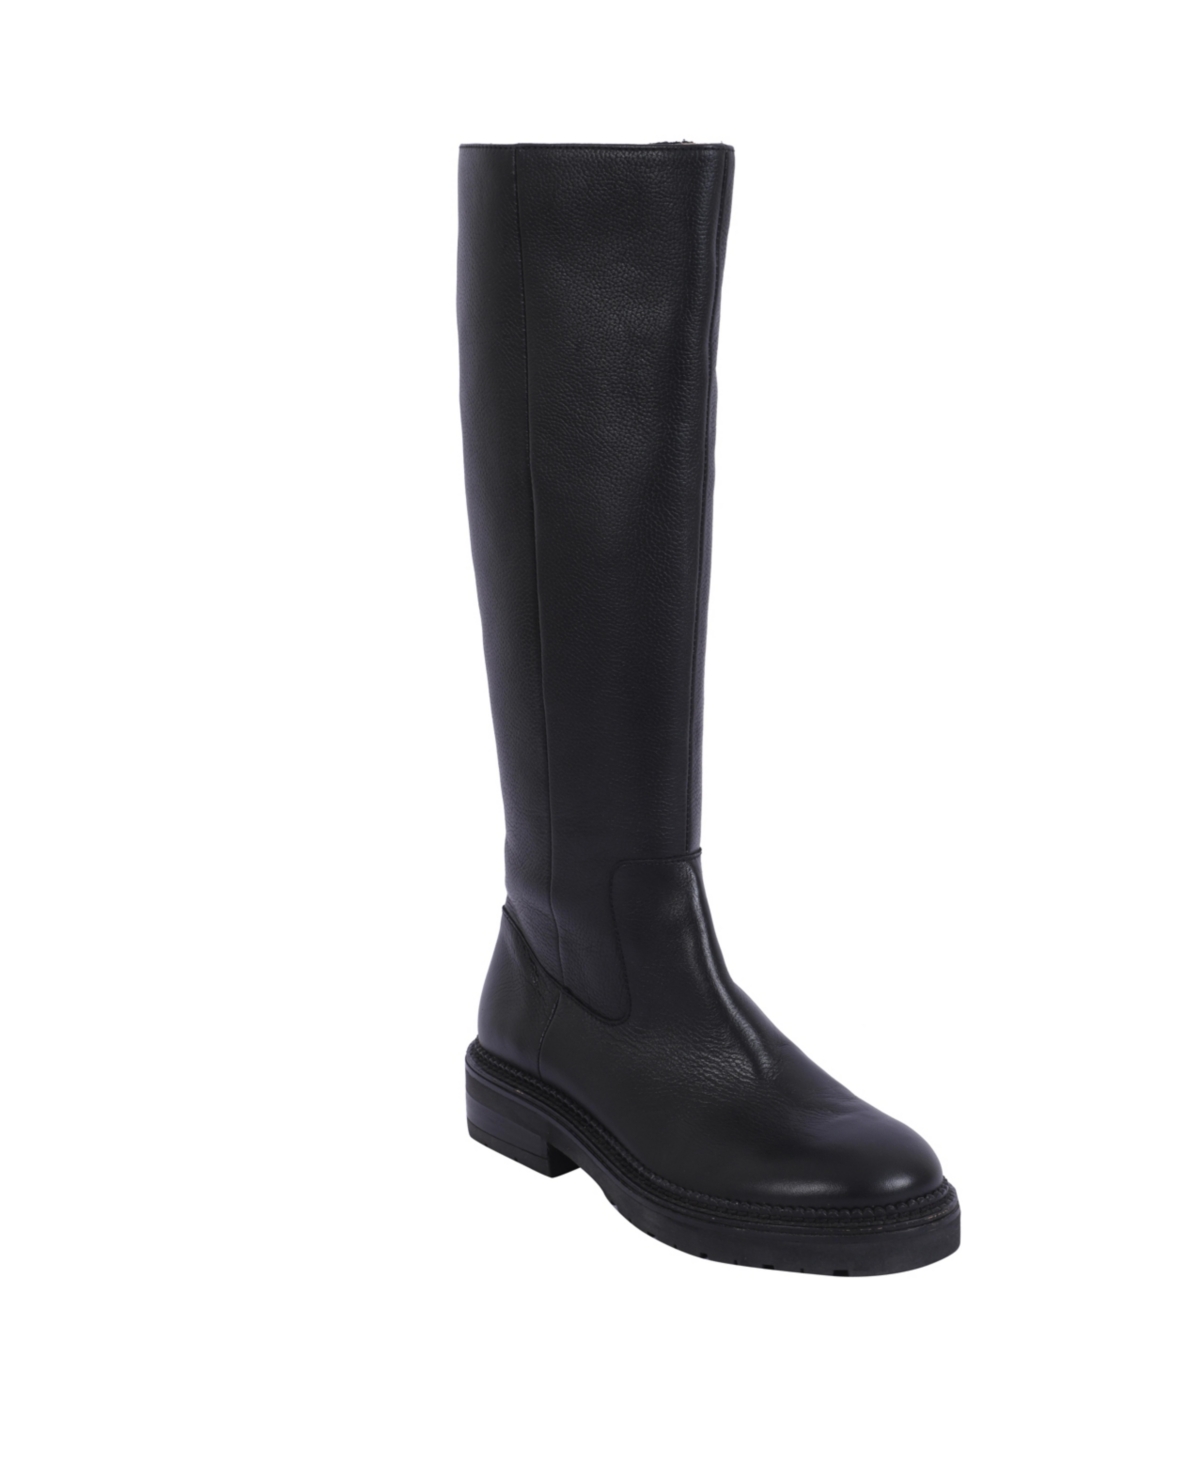 Women's Wendy Zipper Regular Calf Boots - Black Leather